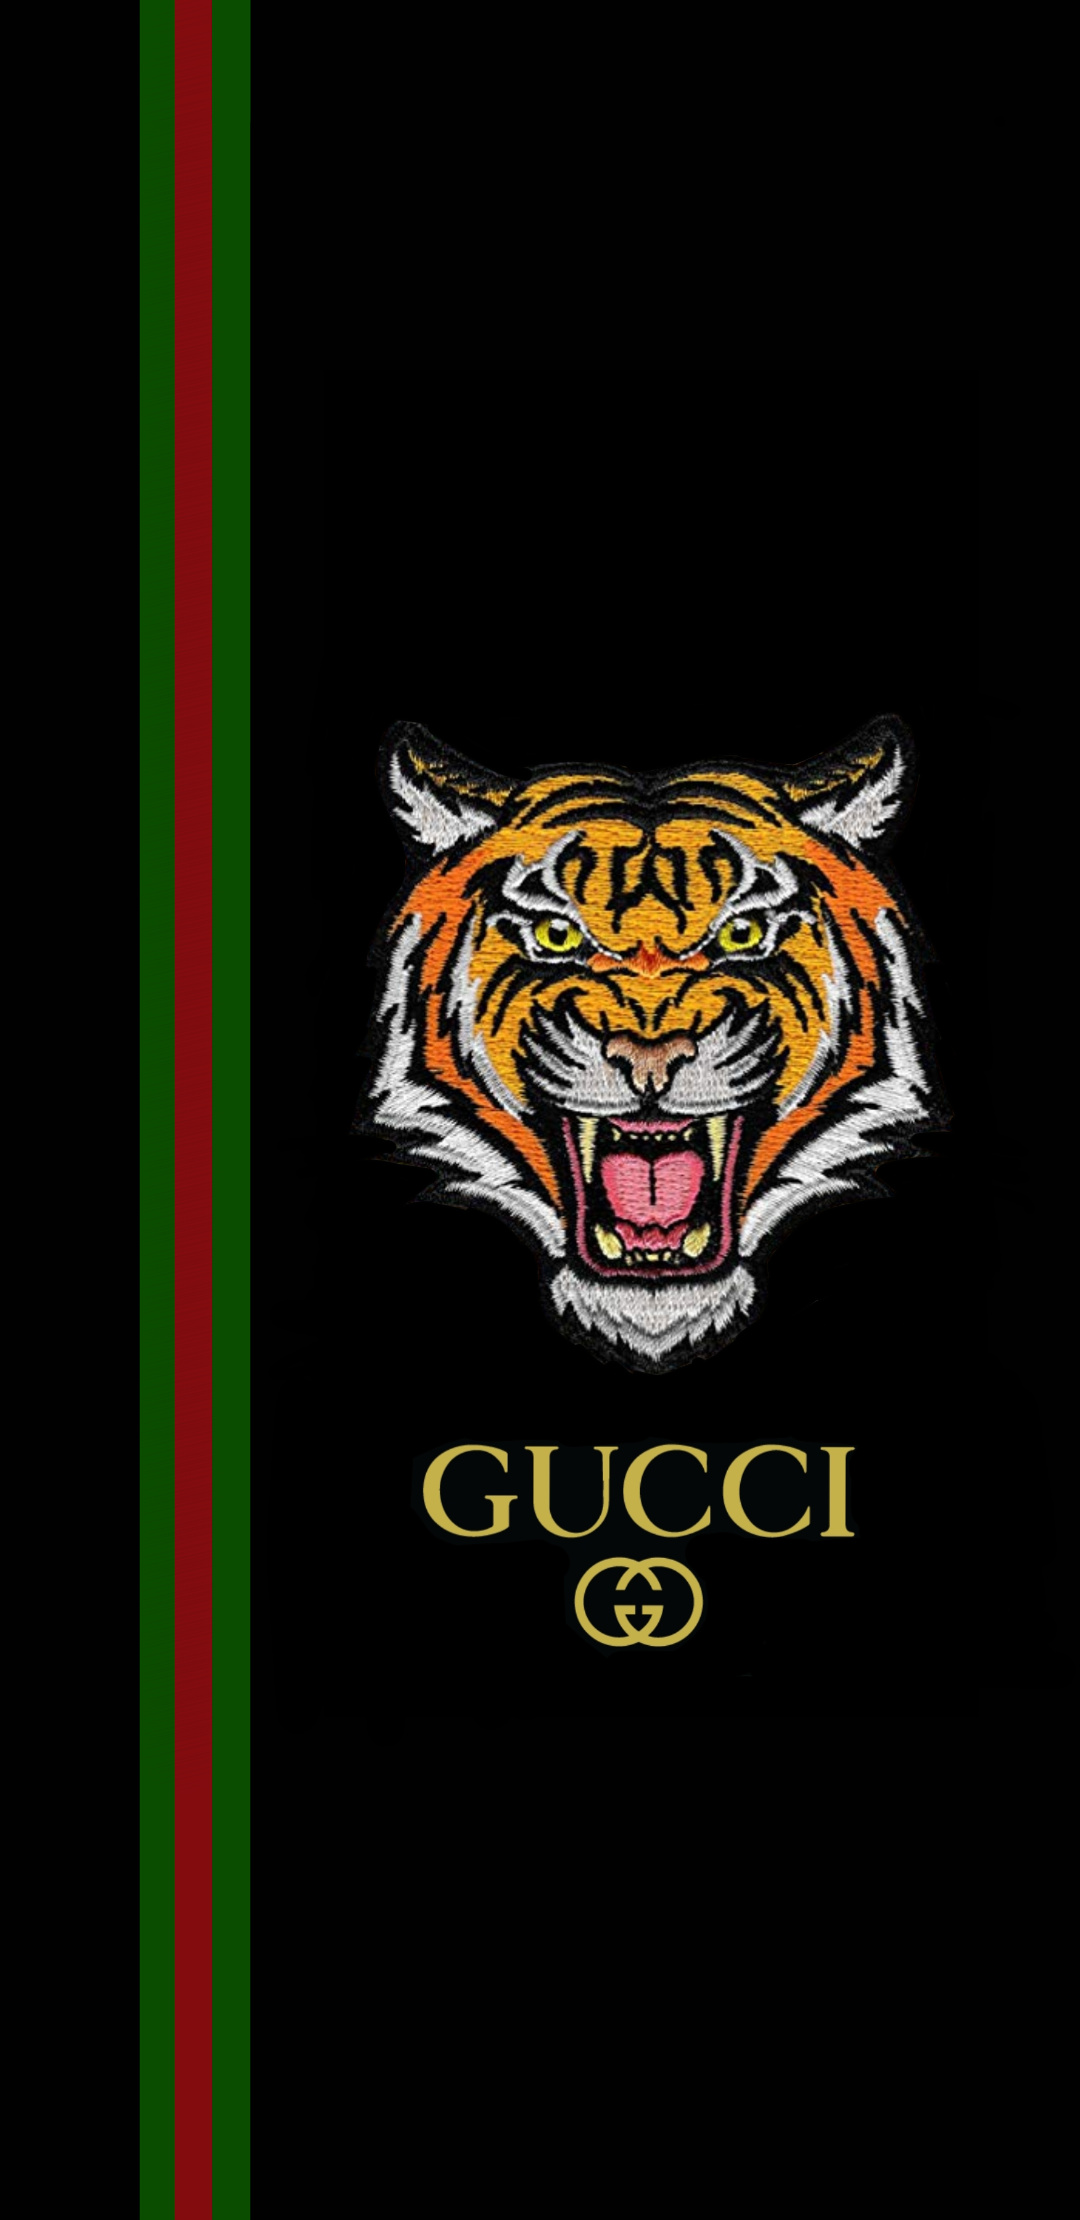 Gucci luôn là một trong những thương hiệu mang đến cho bạn sự nổi bật và cá tính. Hãy tìm một hình ảnh Gucci đen để trang trí cho màn hình điện thoại của bạn. Đặc trưng của Gucci chính là sự tinh tế và cao cấp, bạn sẽ không thể chối từ khi đặt hình nền này lên màn hình điện thoại của mình.